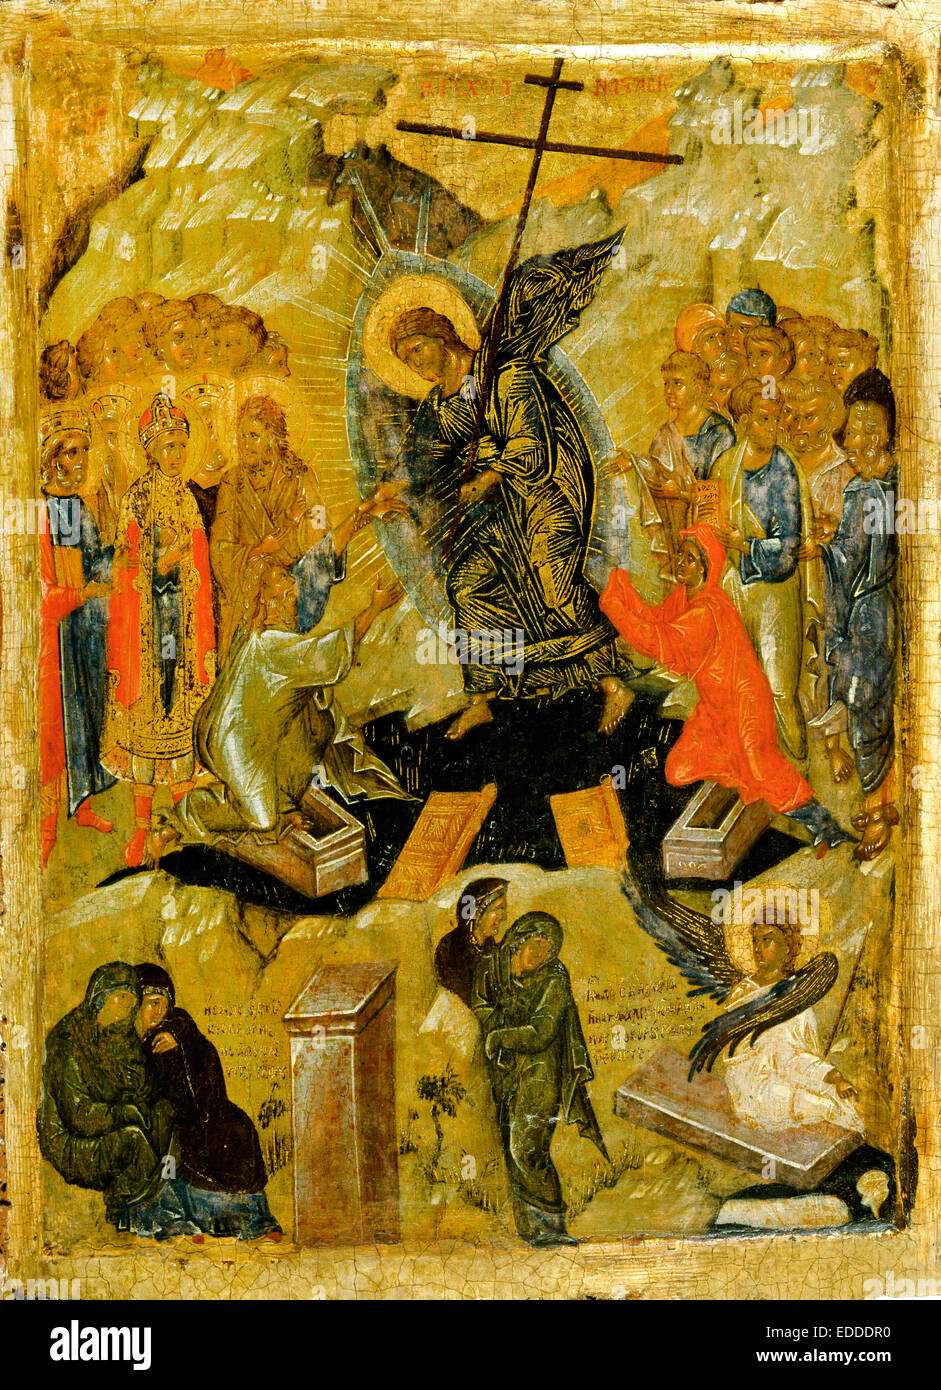 Greco, la risurrezione di Cristo. Circa 1350-1375. Tempera su legno. Walters Art Museum di Baltimora, Stati Uniti d'America. Foto Stock